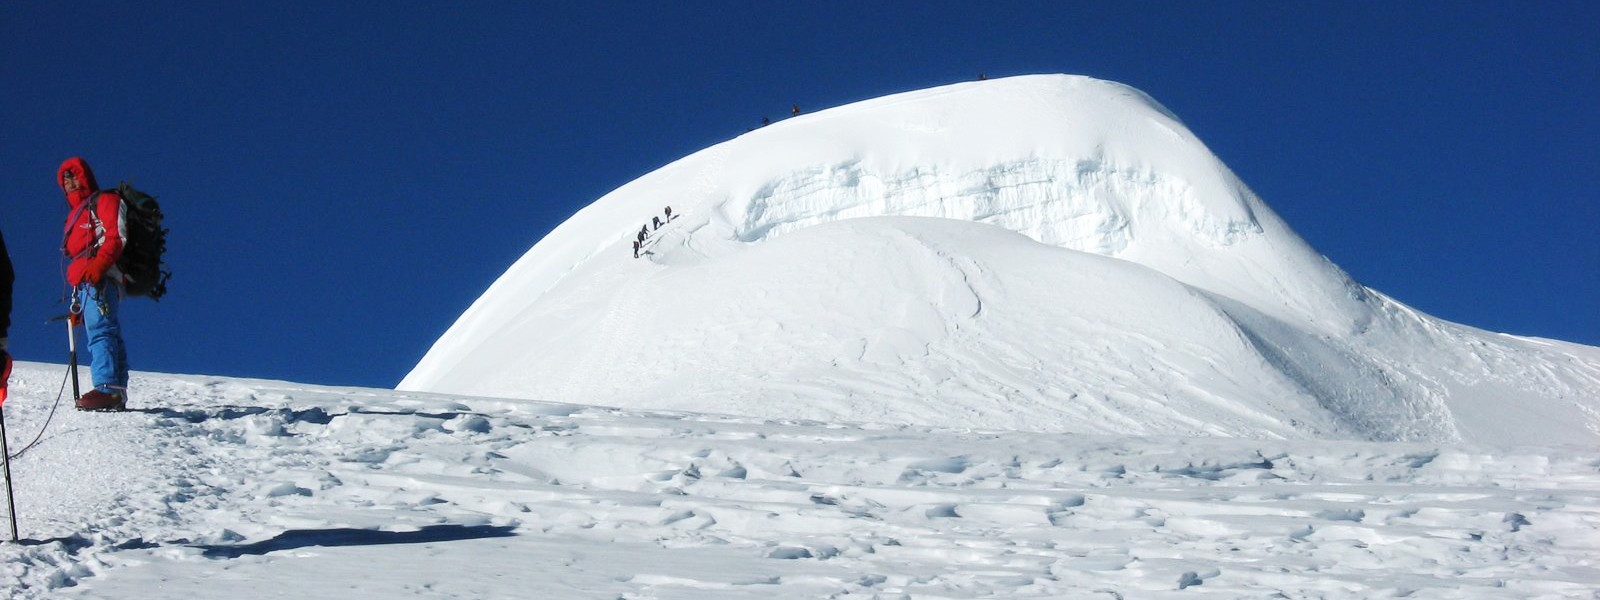 Mera Peak summit